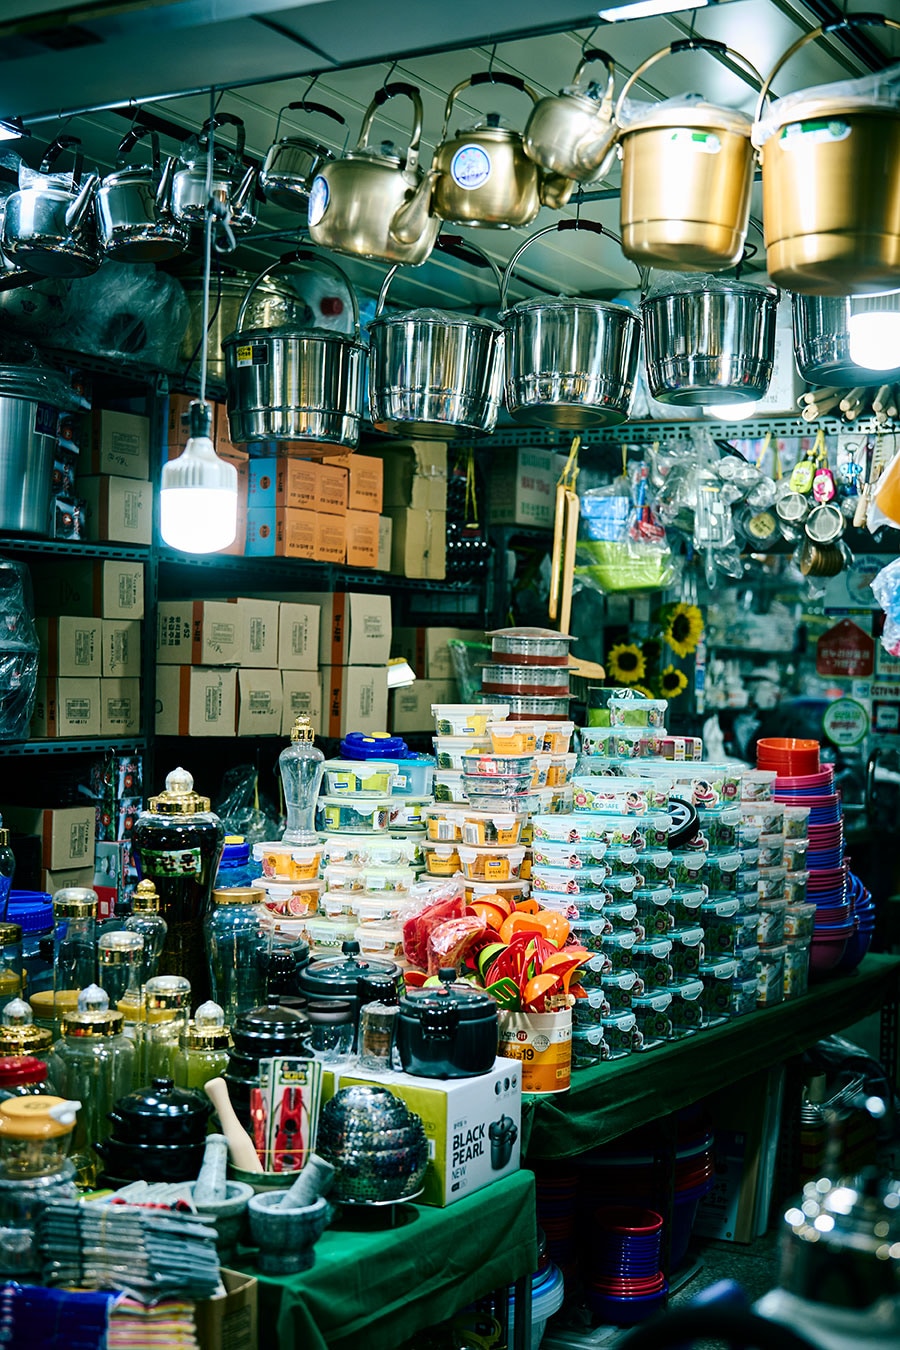 広い市場の中には生鮮品や薬草の専門店だけでなく、思わず日本に連れて帰りたくなる台所道具の揃った店も。